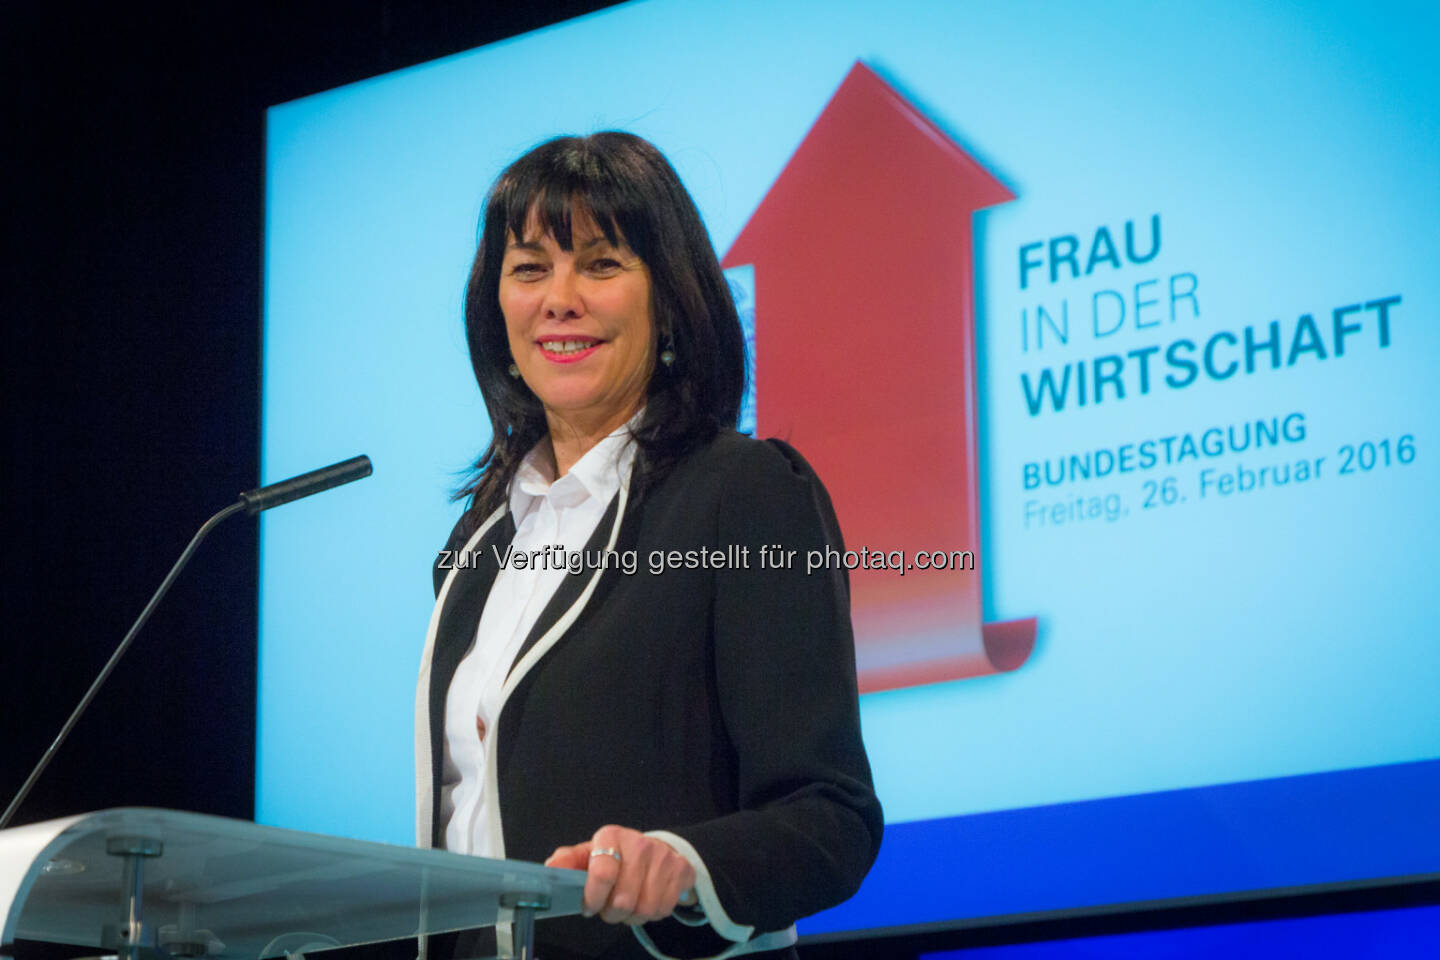 Martha Schultz zur Bundesvorsitzenden von Frau in der Wirtschaft im Wirtschaftsbund gewählt : Fotocredit: Foto
Weinwurm